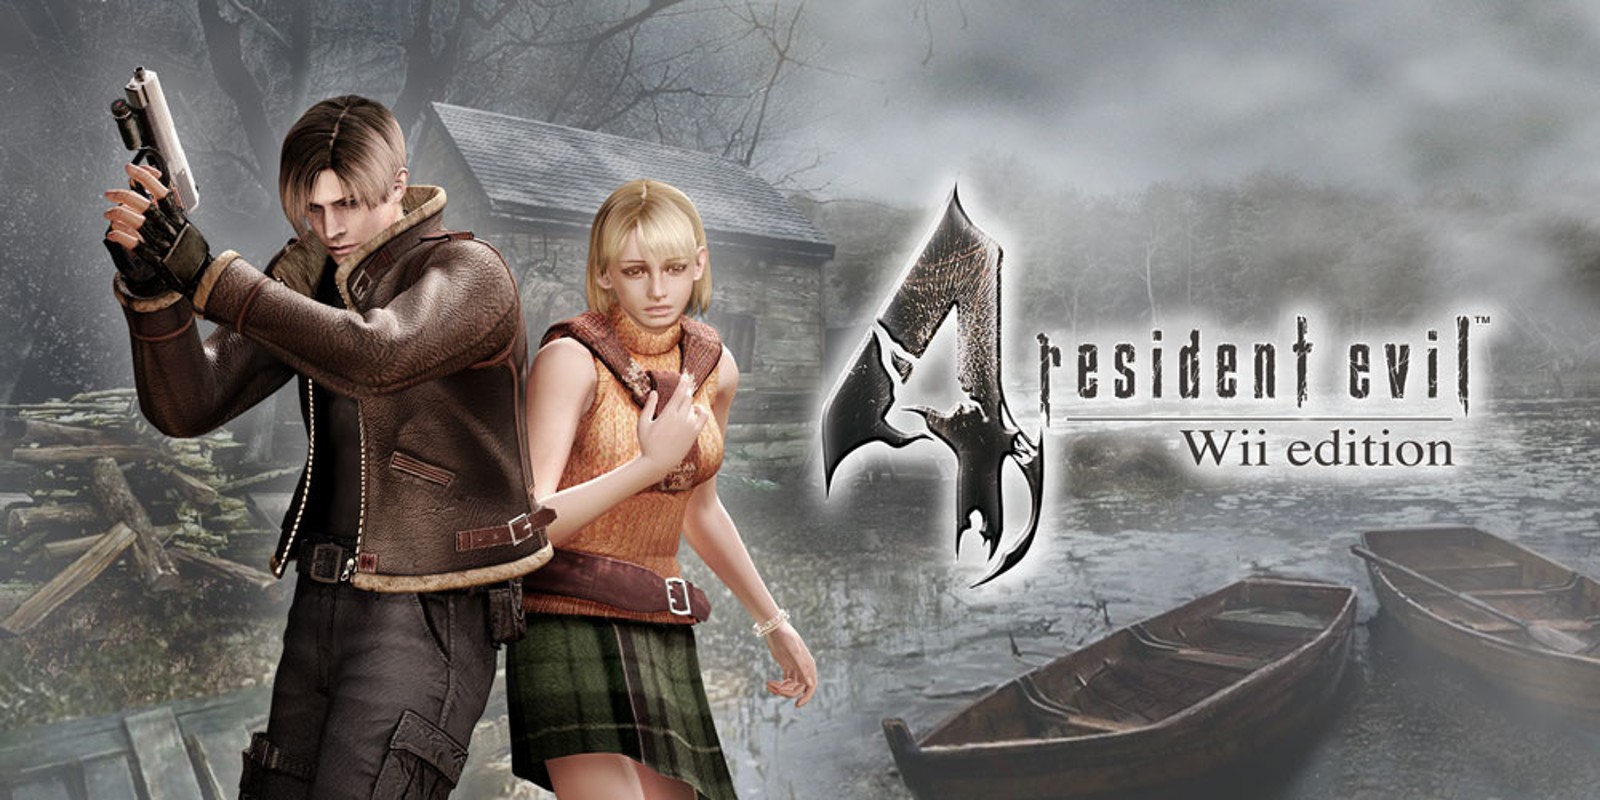 Прохождение игры Resident Evil 4 - Ultimate HD Edition # 24 (Русская версия игры) PC - Ver. HD Full.